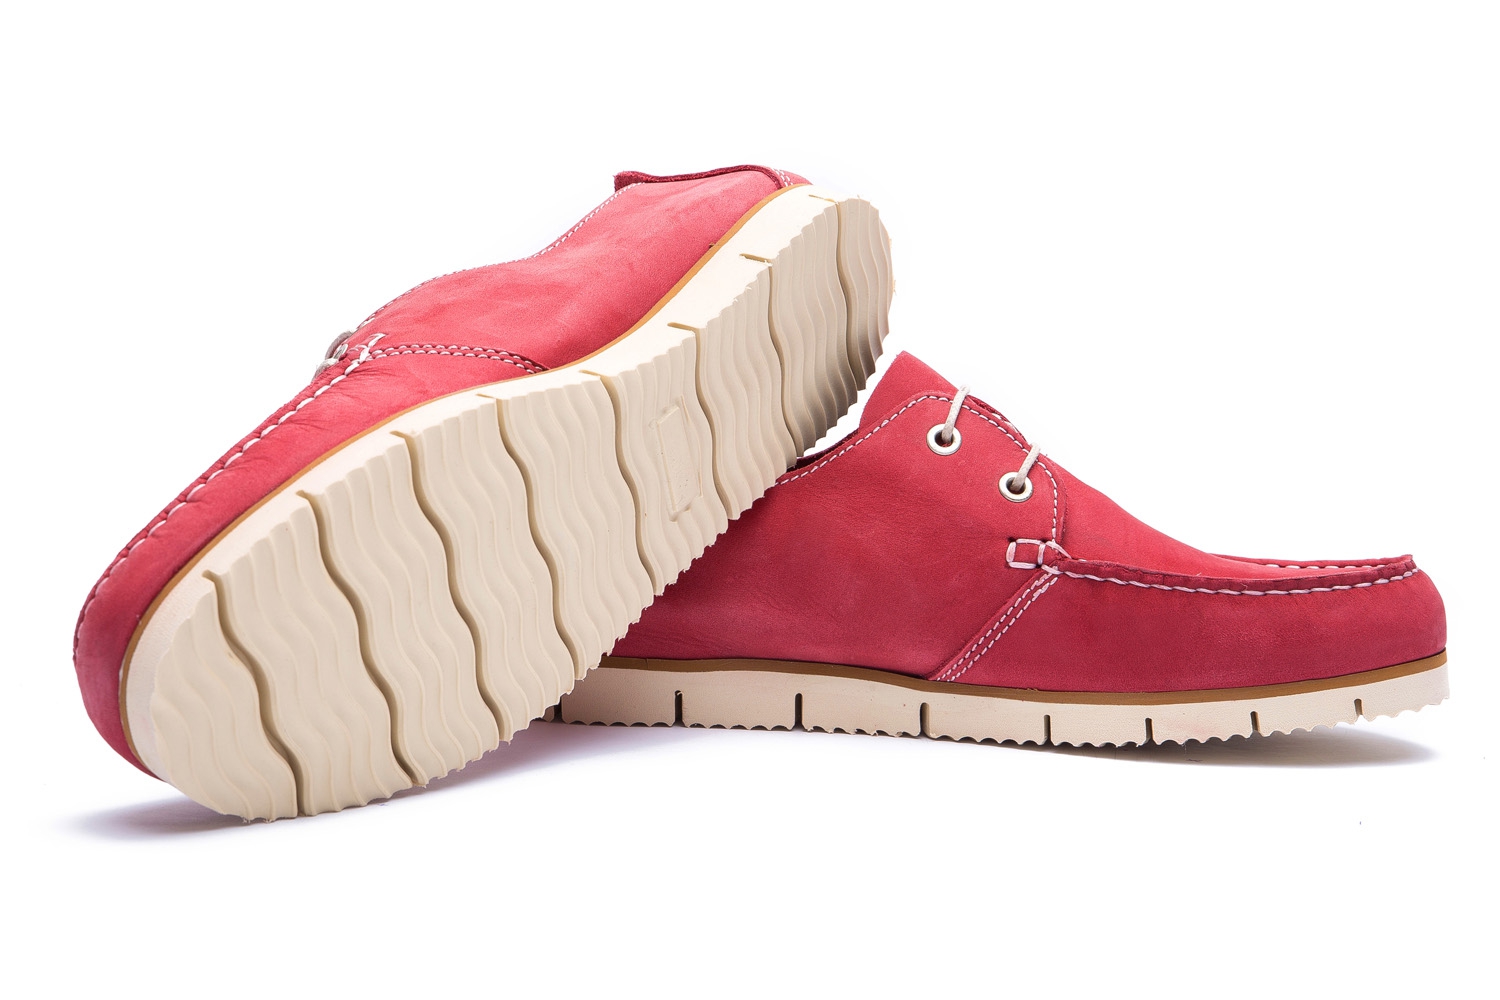 Pantofi rosii piele nabuc 1